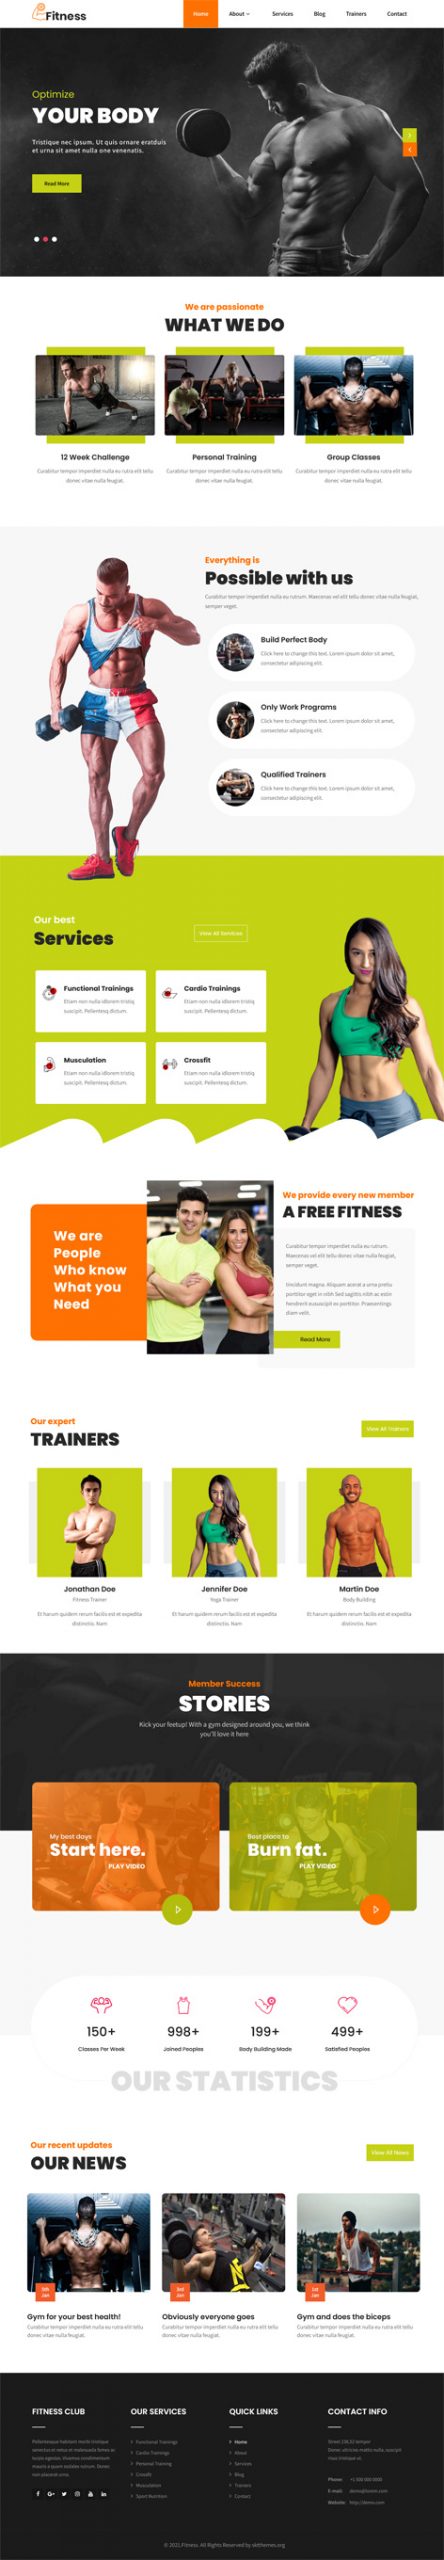 Fitness Gym WordPress theme